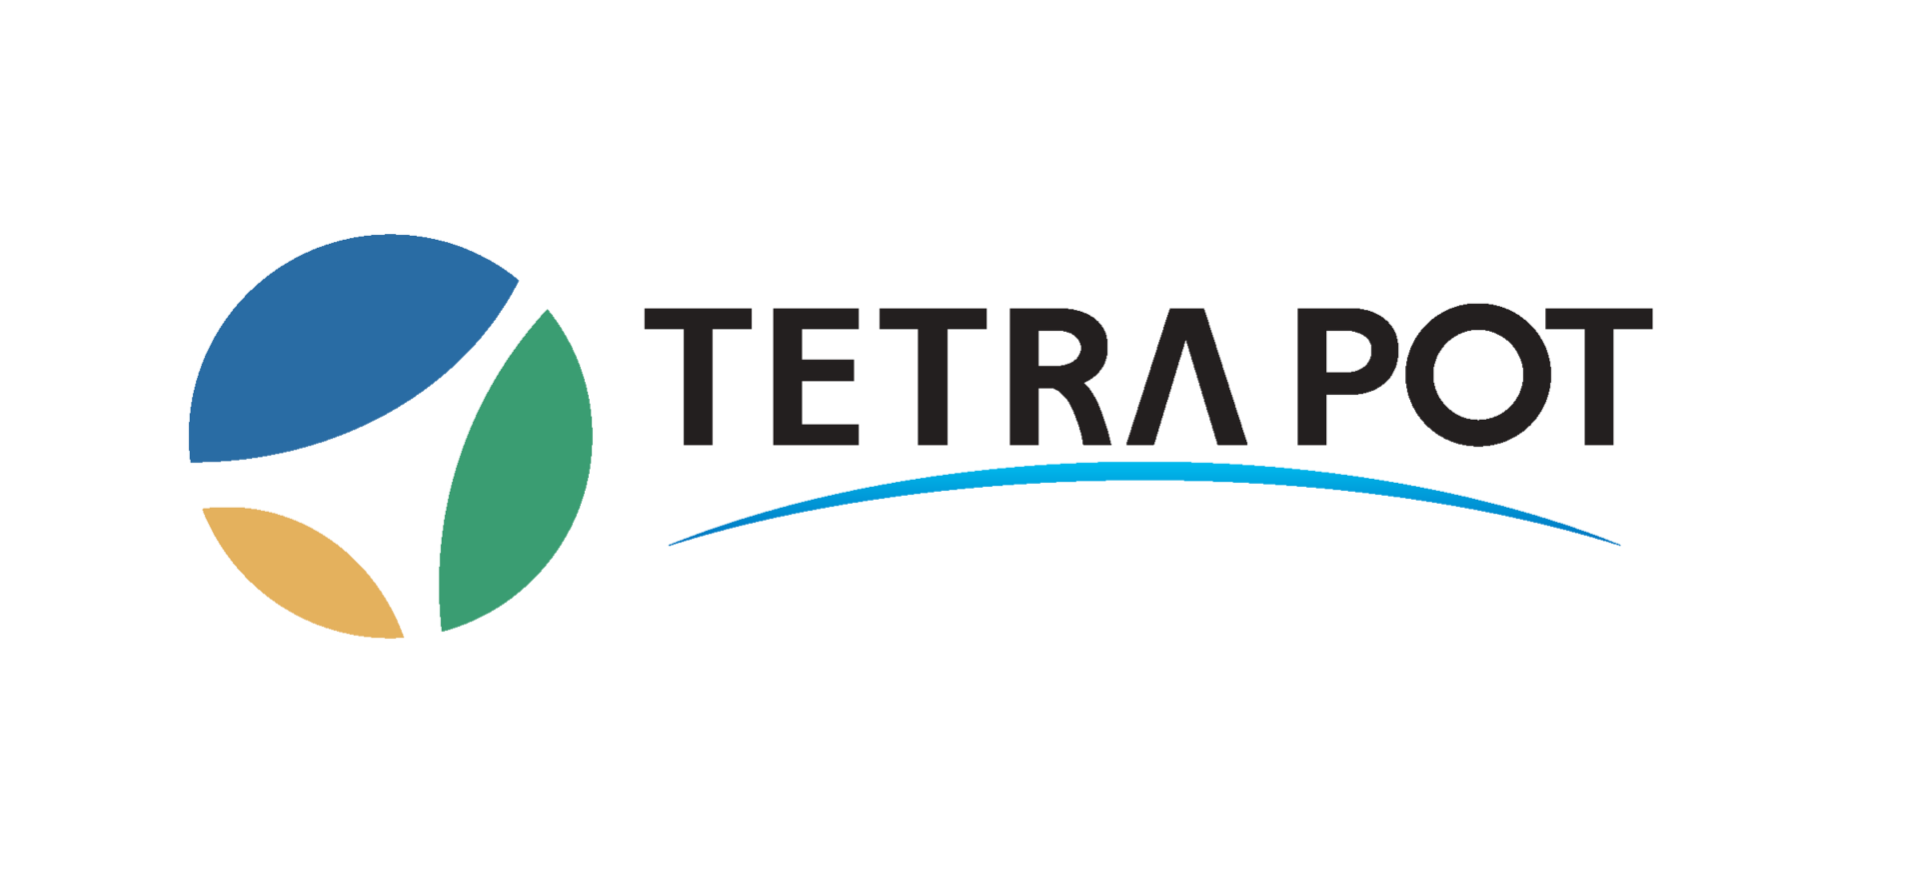 ユニフォームスポンサー（袖）
TETRAPOT株式会社